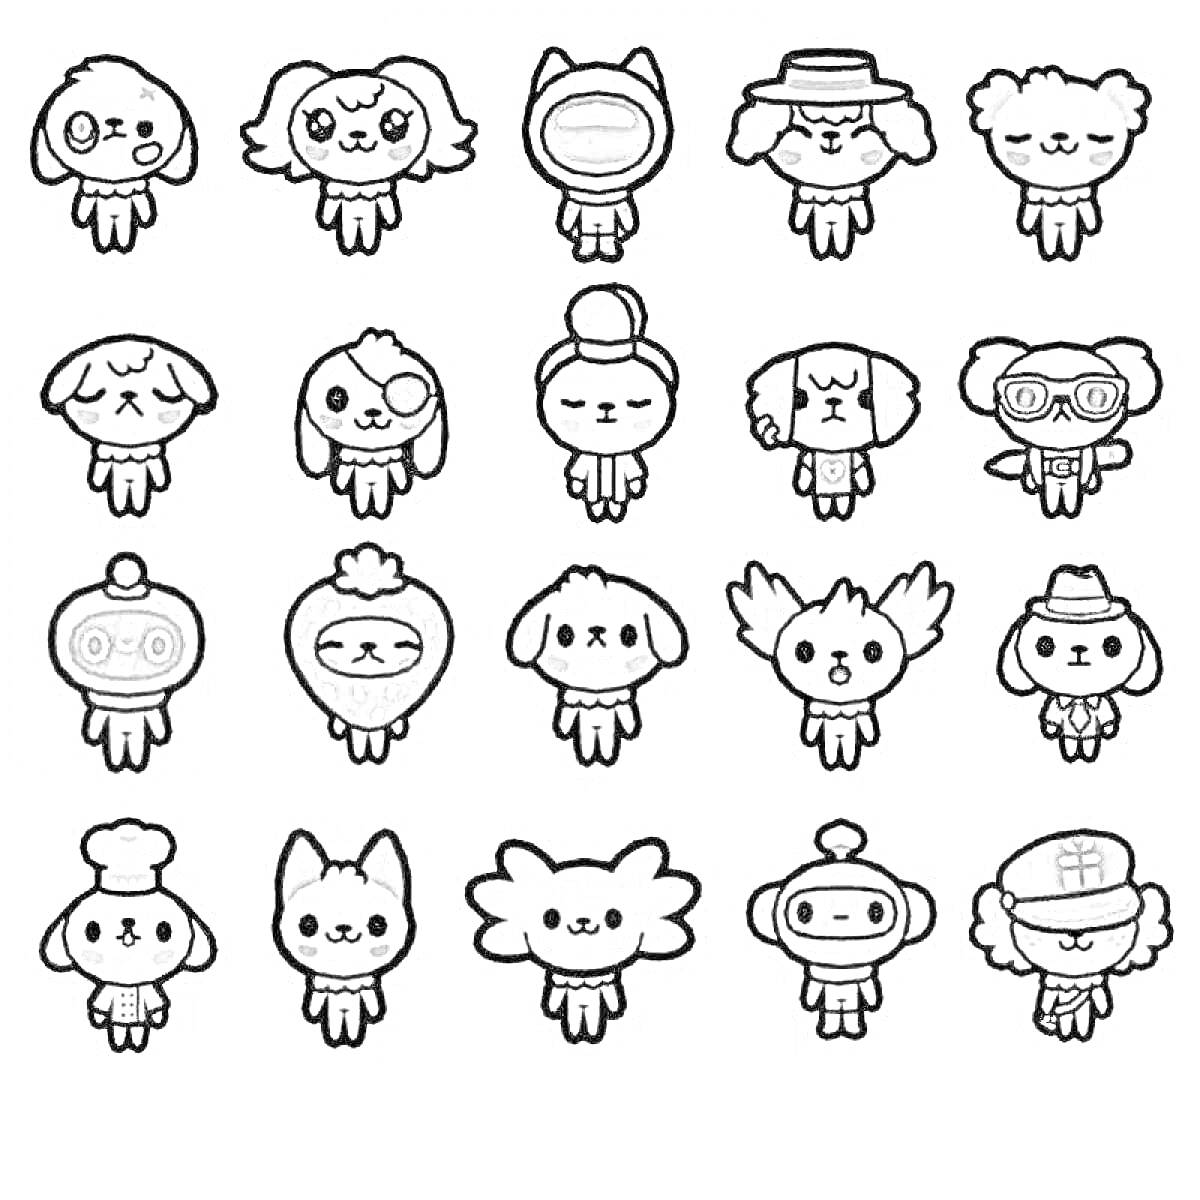 Раскраска Toca Boca персонажи, 20 маленьких персонажей с различными аксессуарами - шляпы, очки, крылья, и различные костюмы